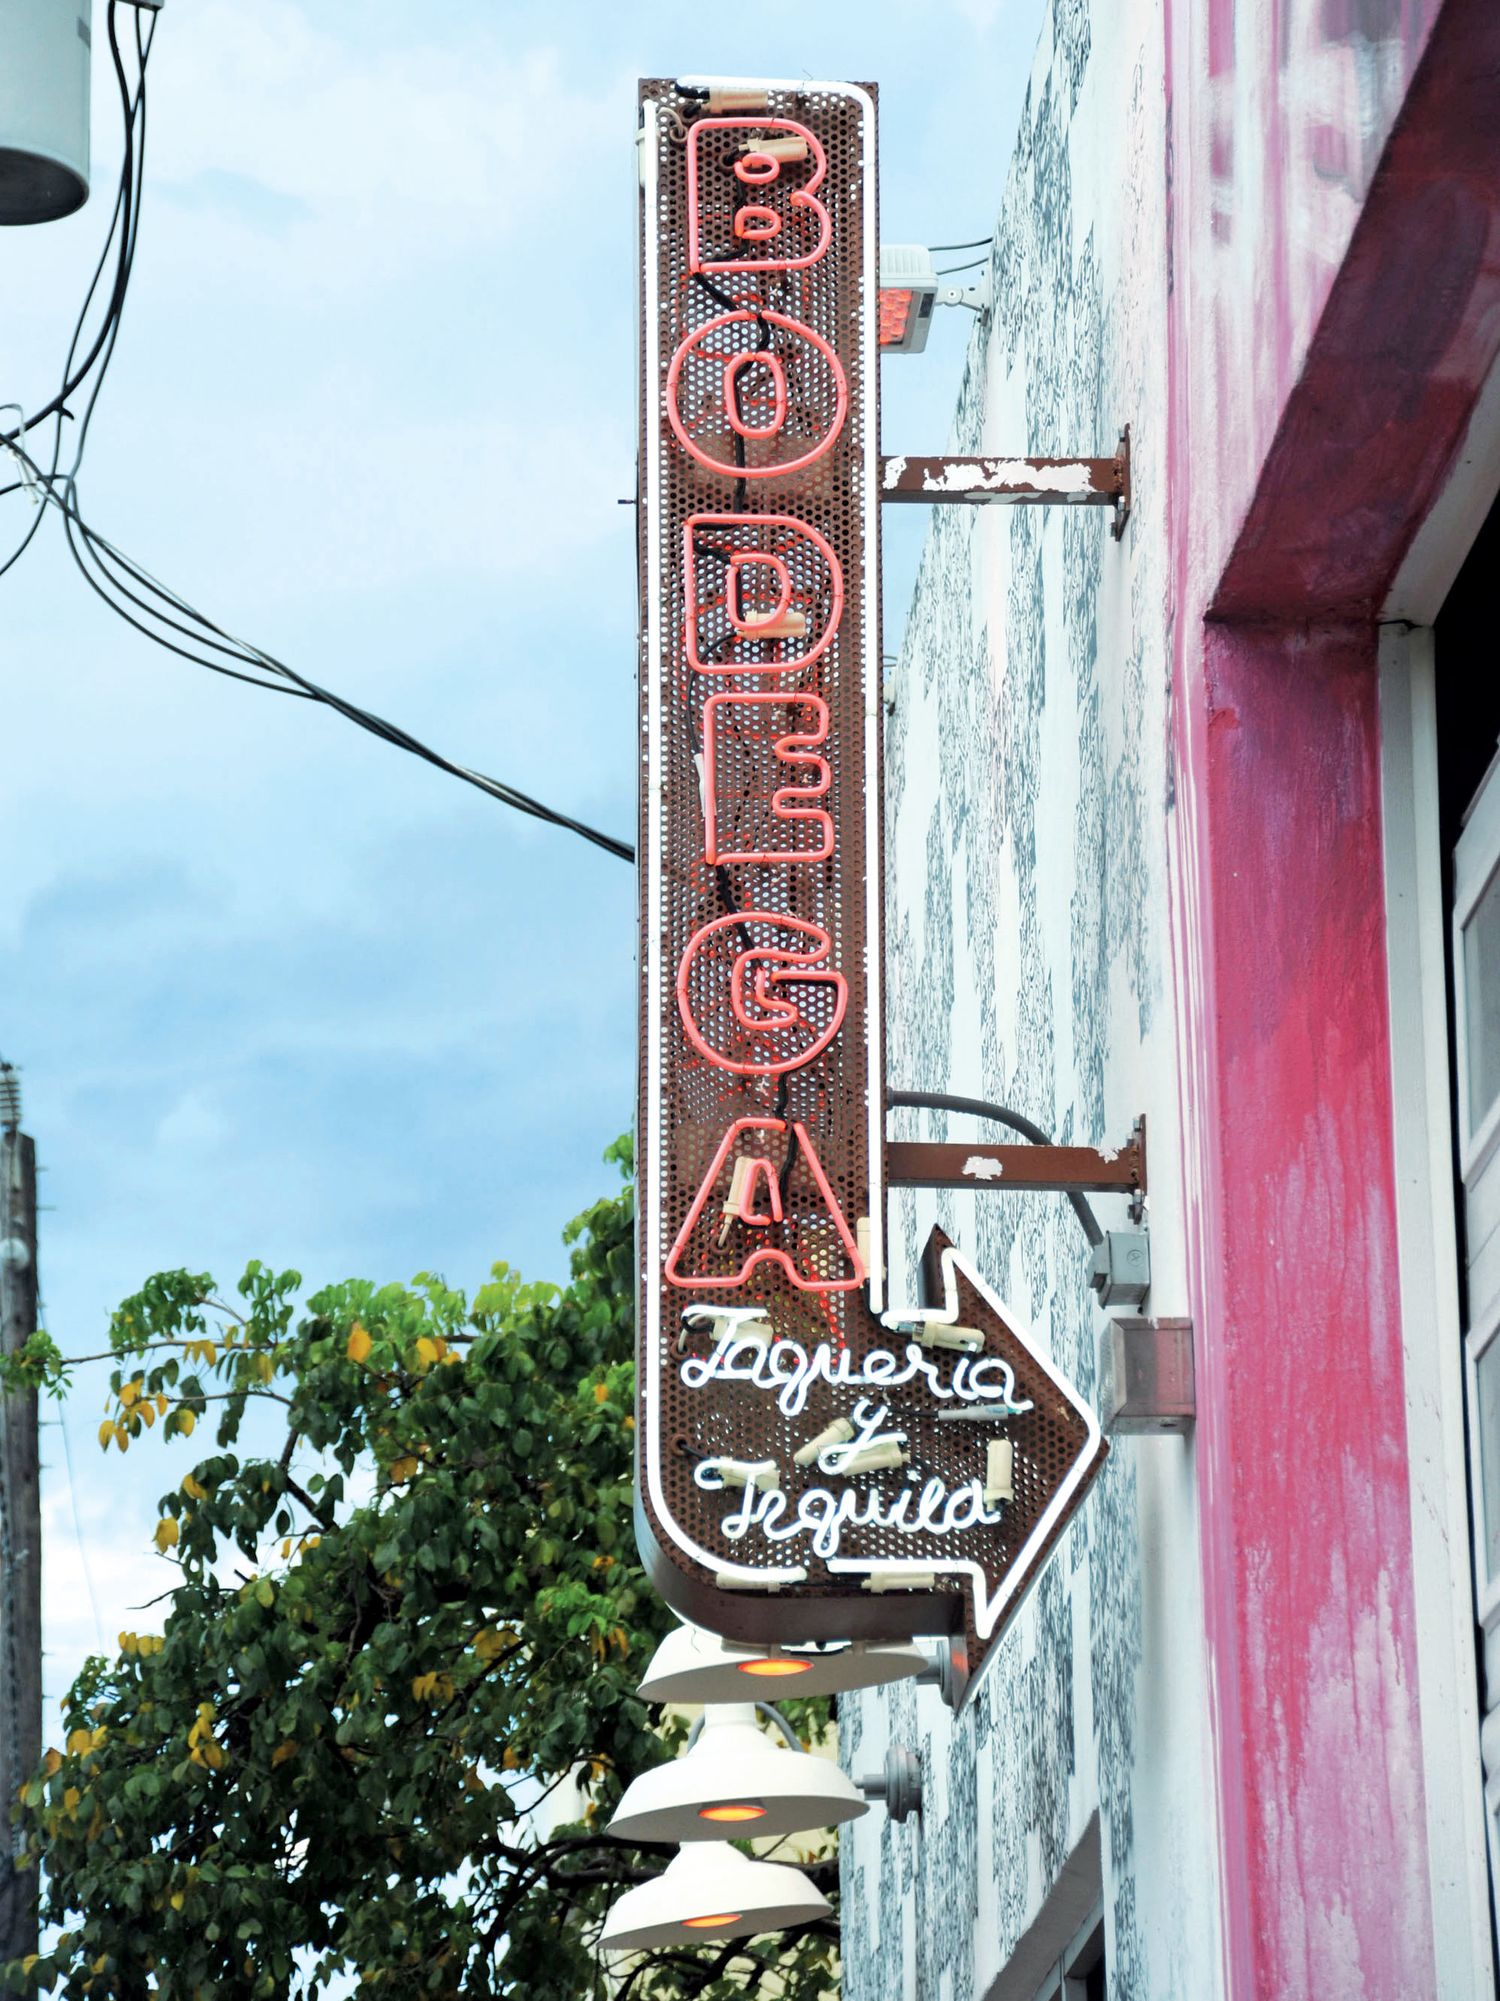 The sign of Bodega taqueria in Miami.